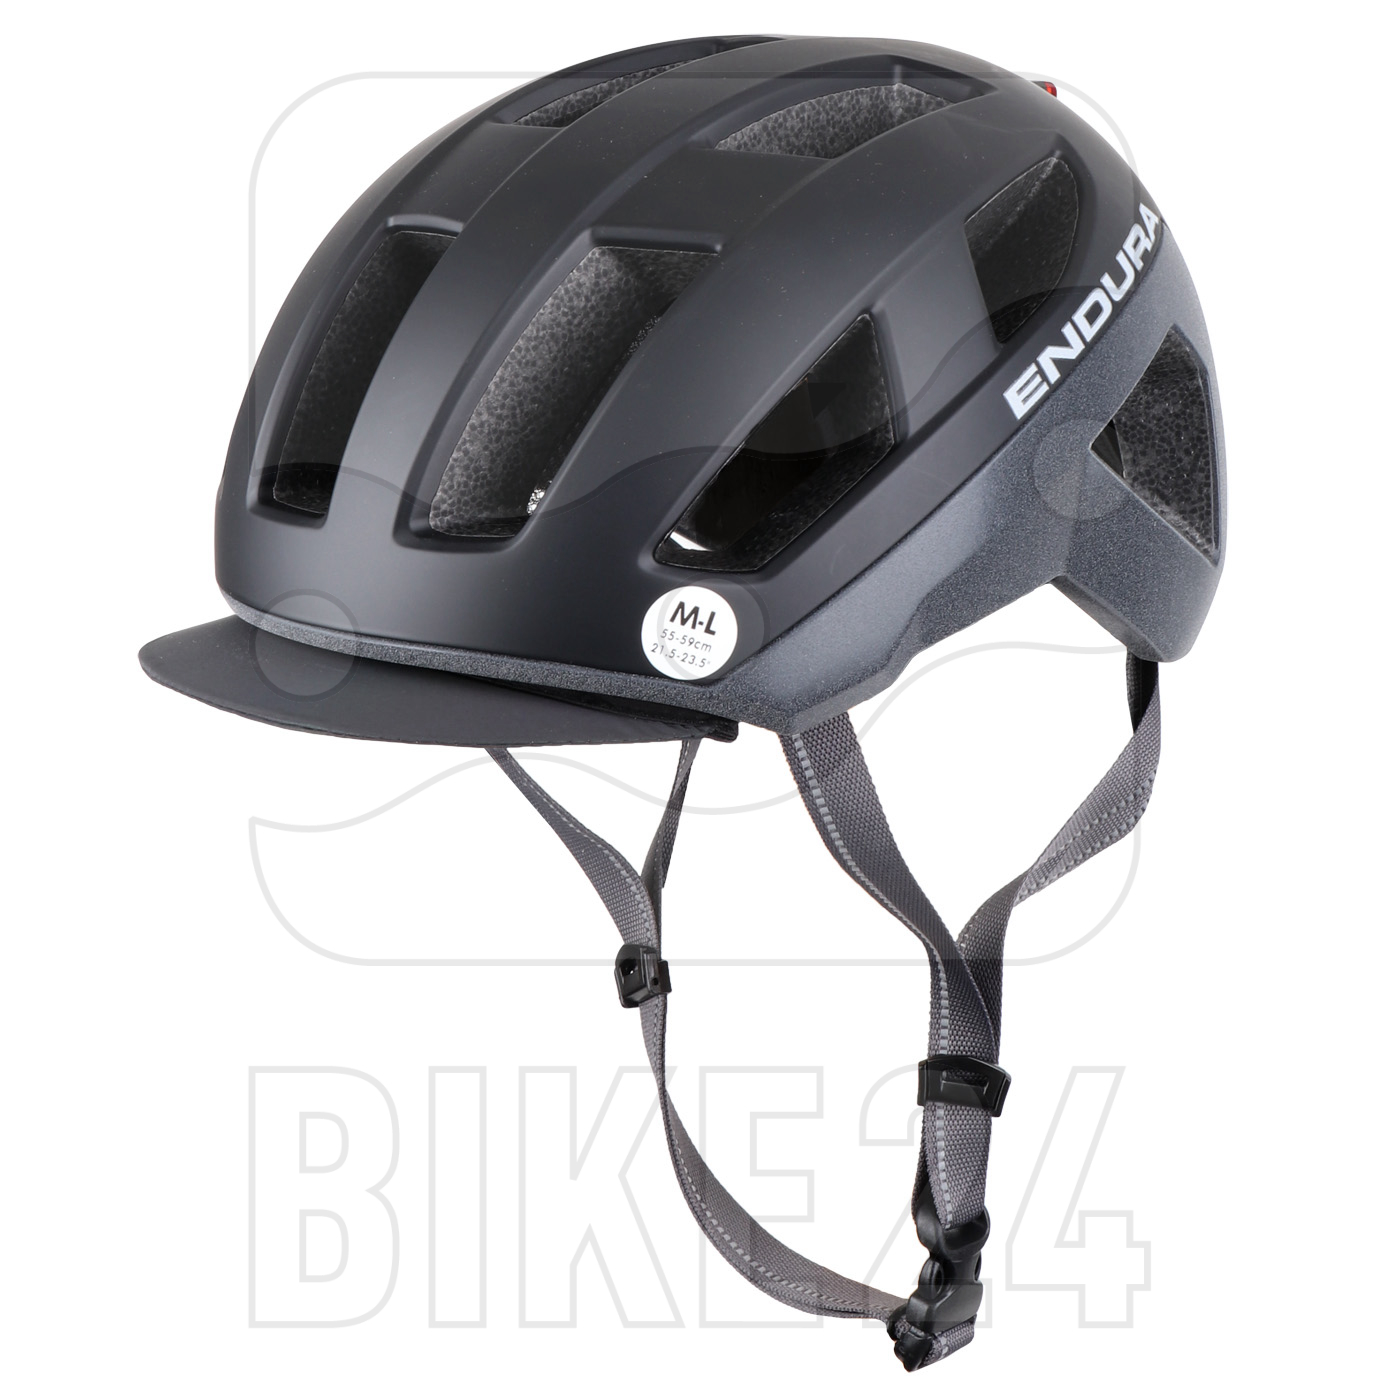 Produktbild von Endura Urban Luminite Helm - schwarz